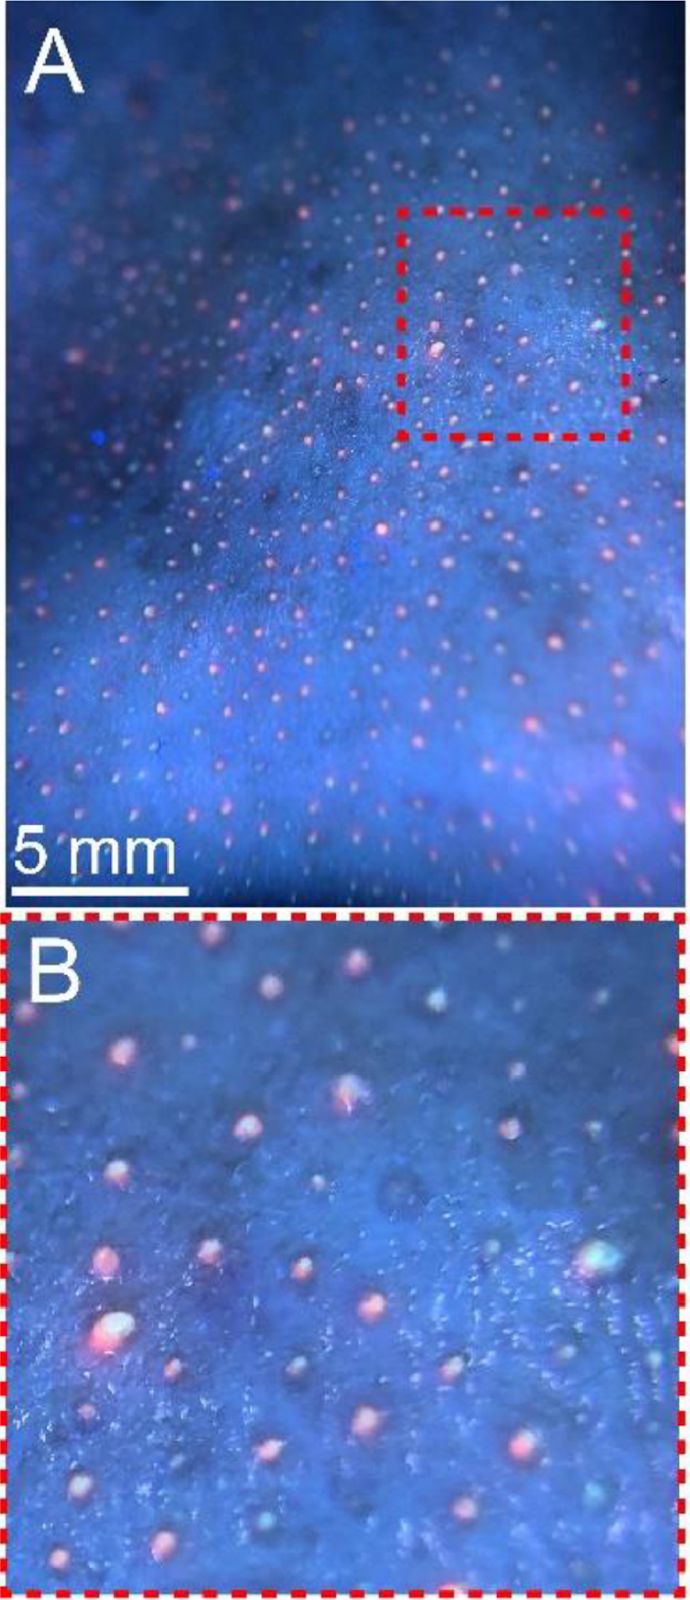 (А) Фотография кожи переносицы добровольца в ультрафиолетовом излучении. (Б) Крупный план выделенного на “А” участка